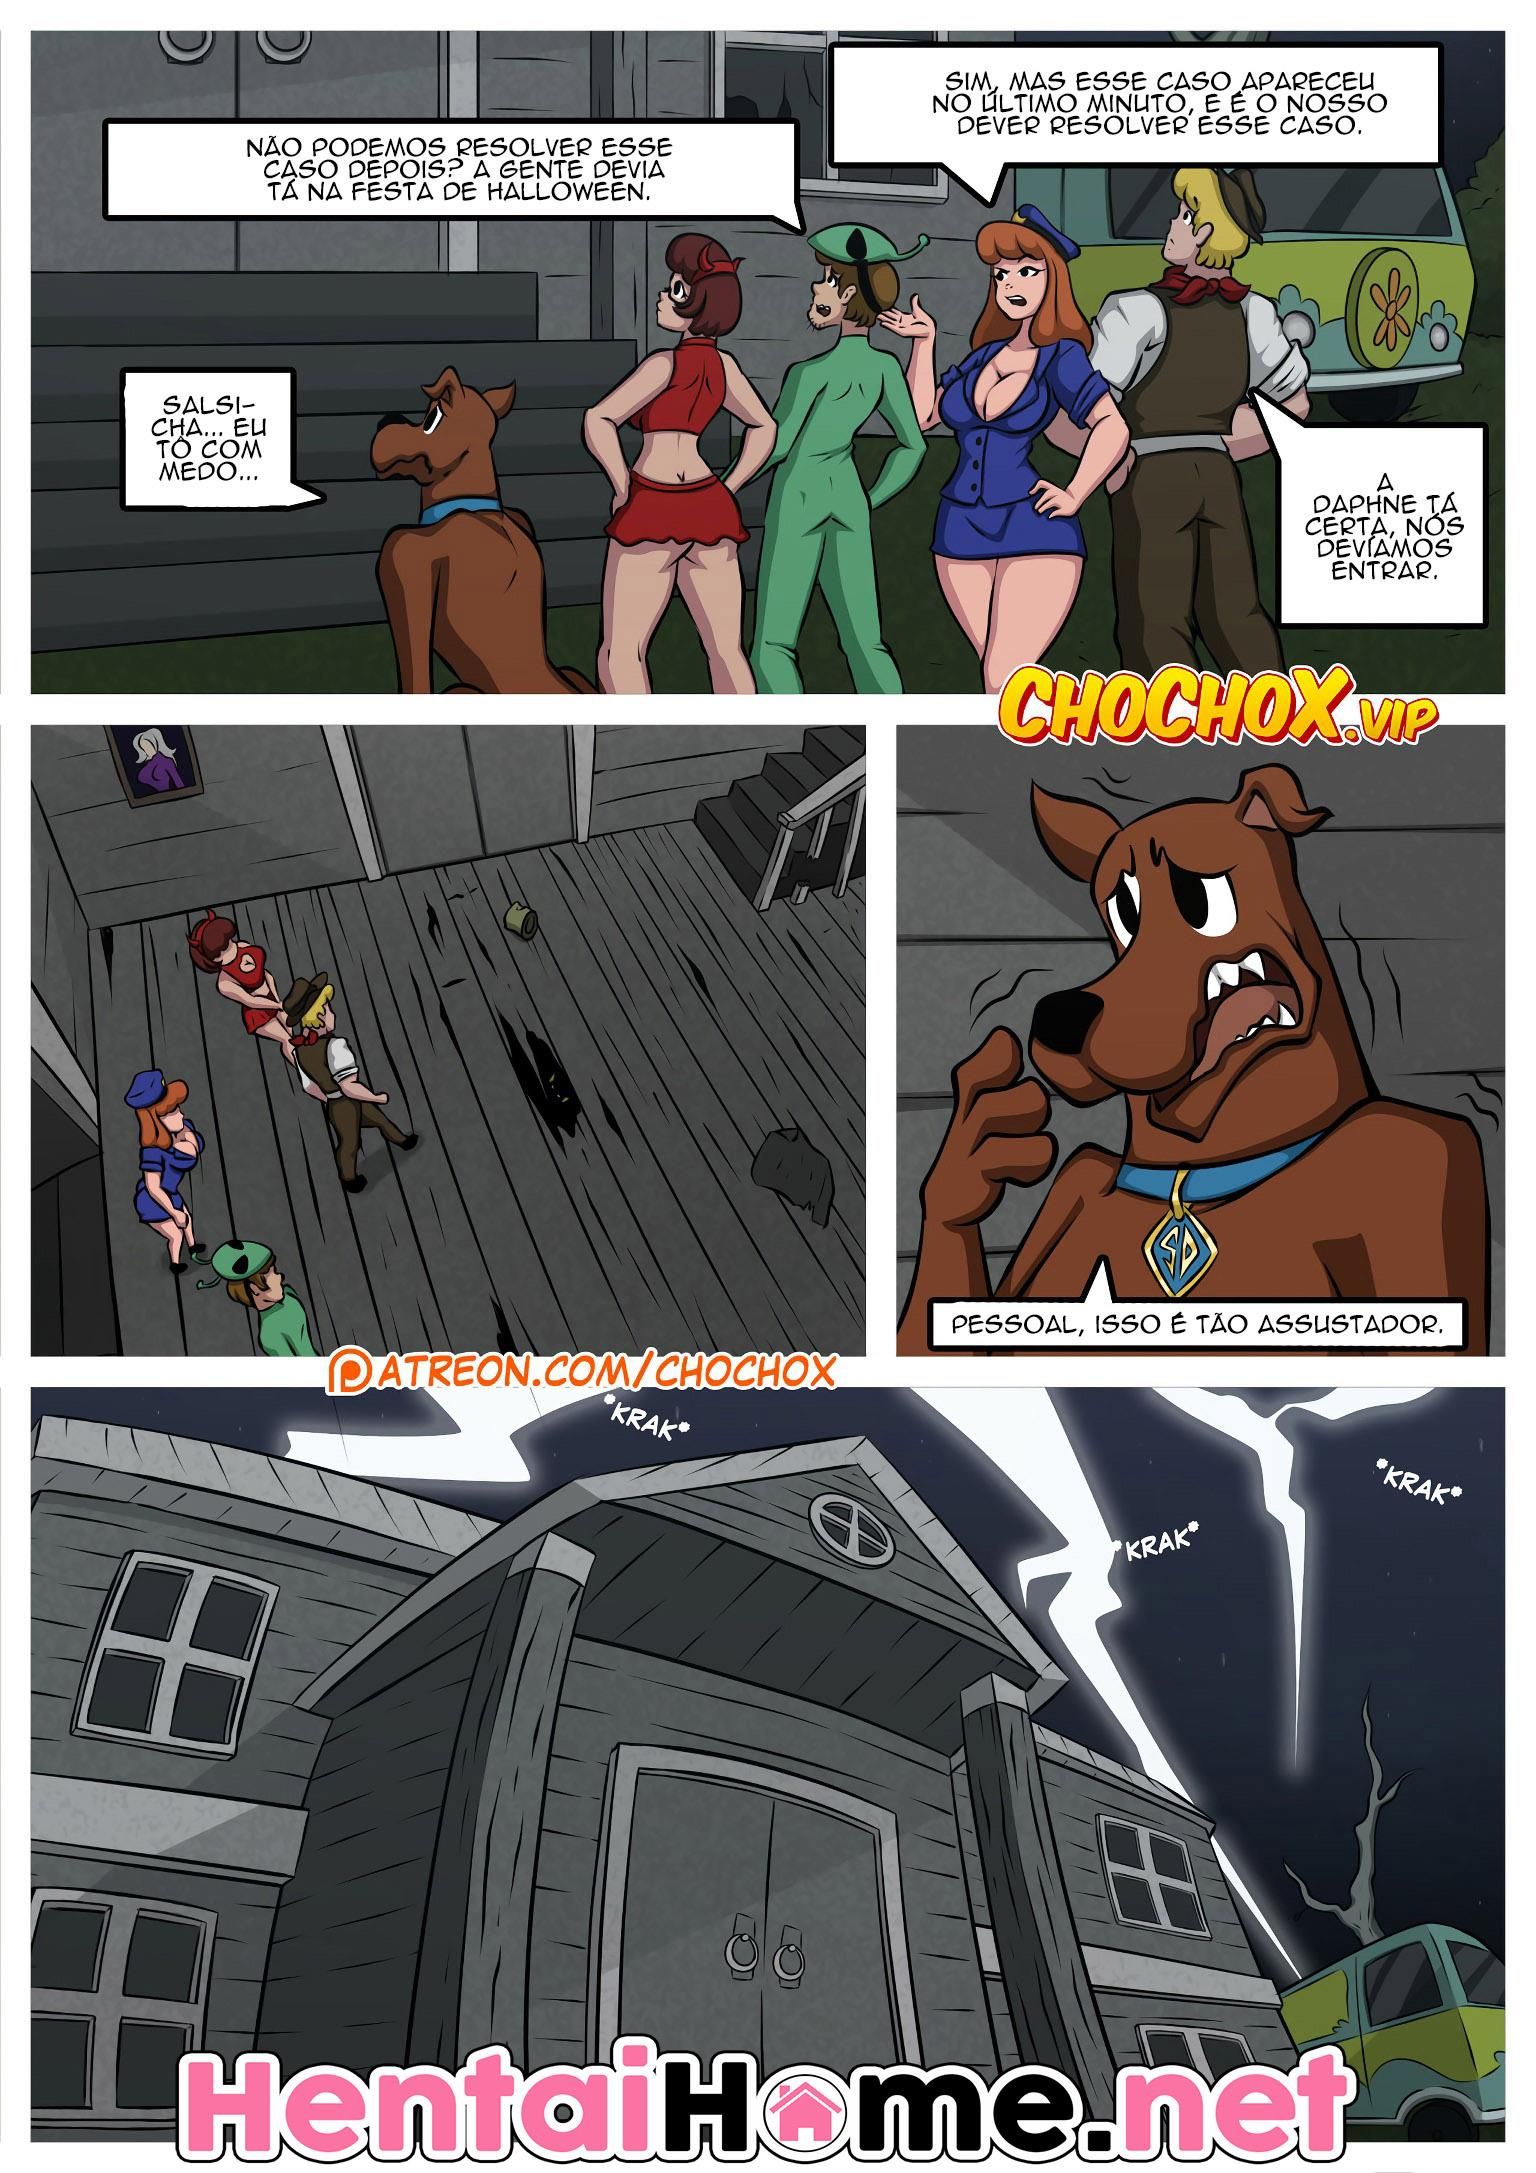 Scooby Doo HQ de Sexo - Foto 2